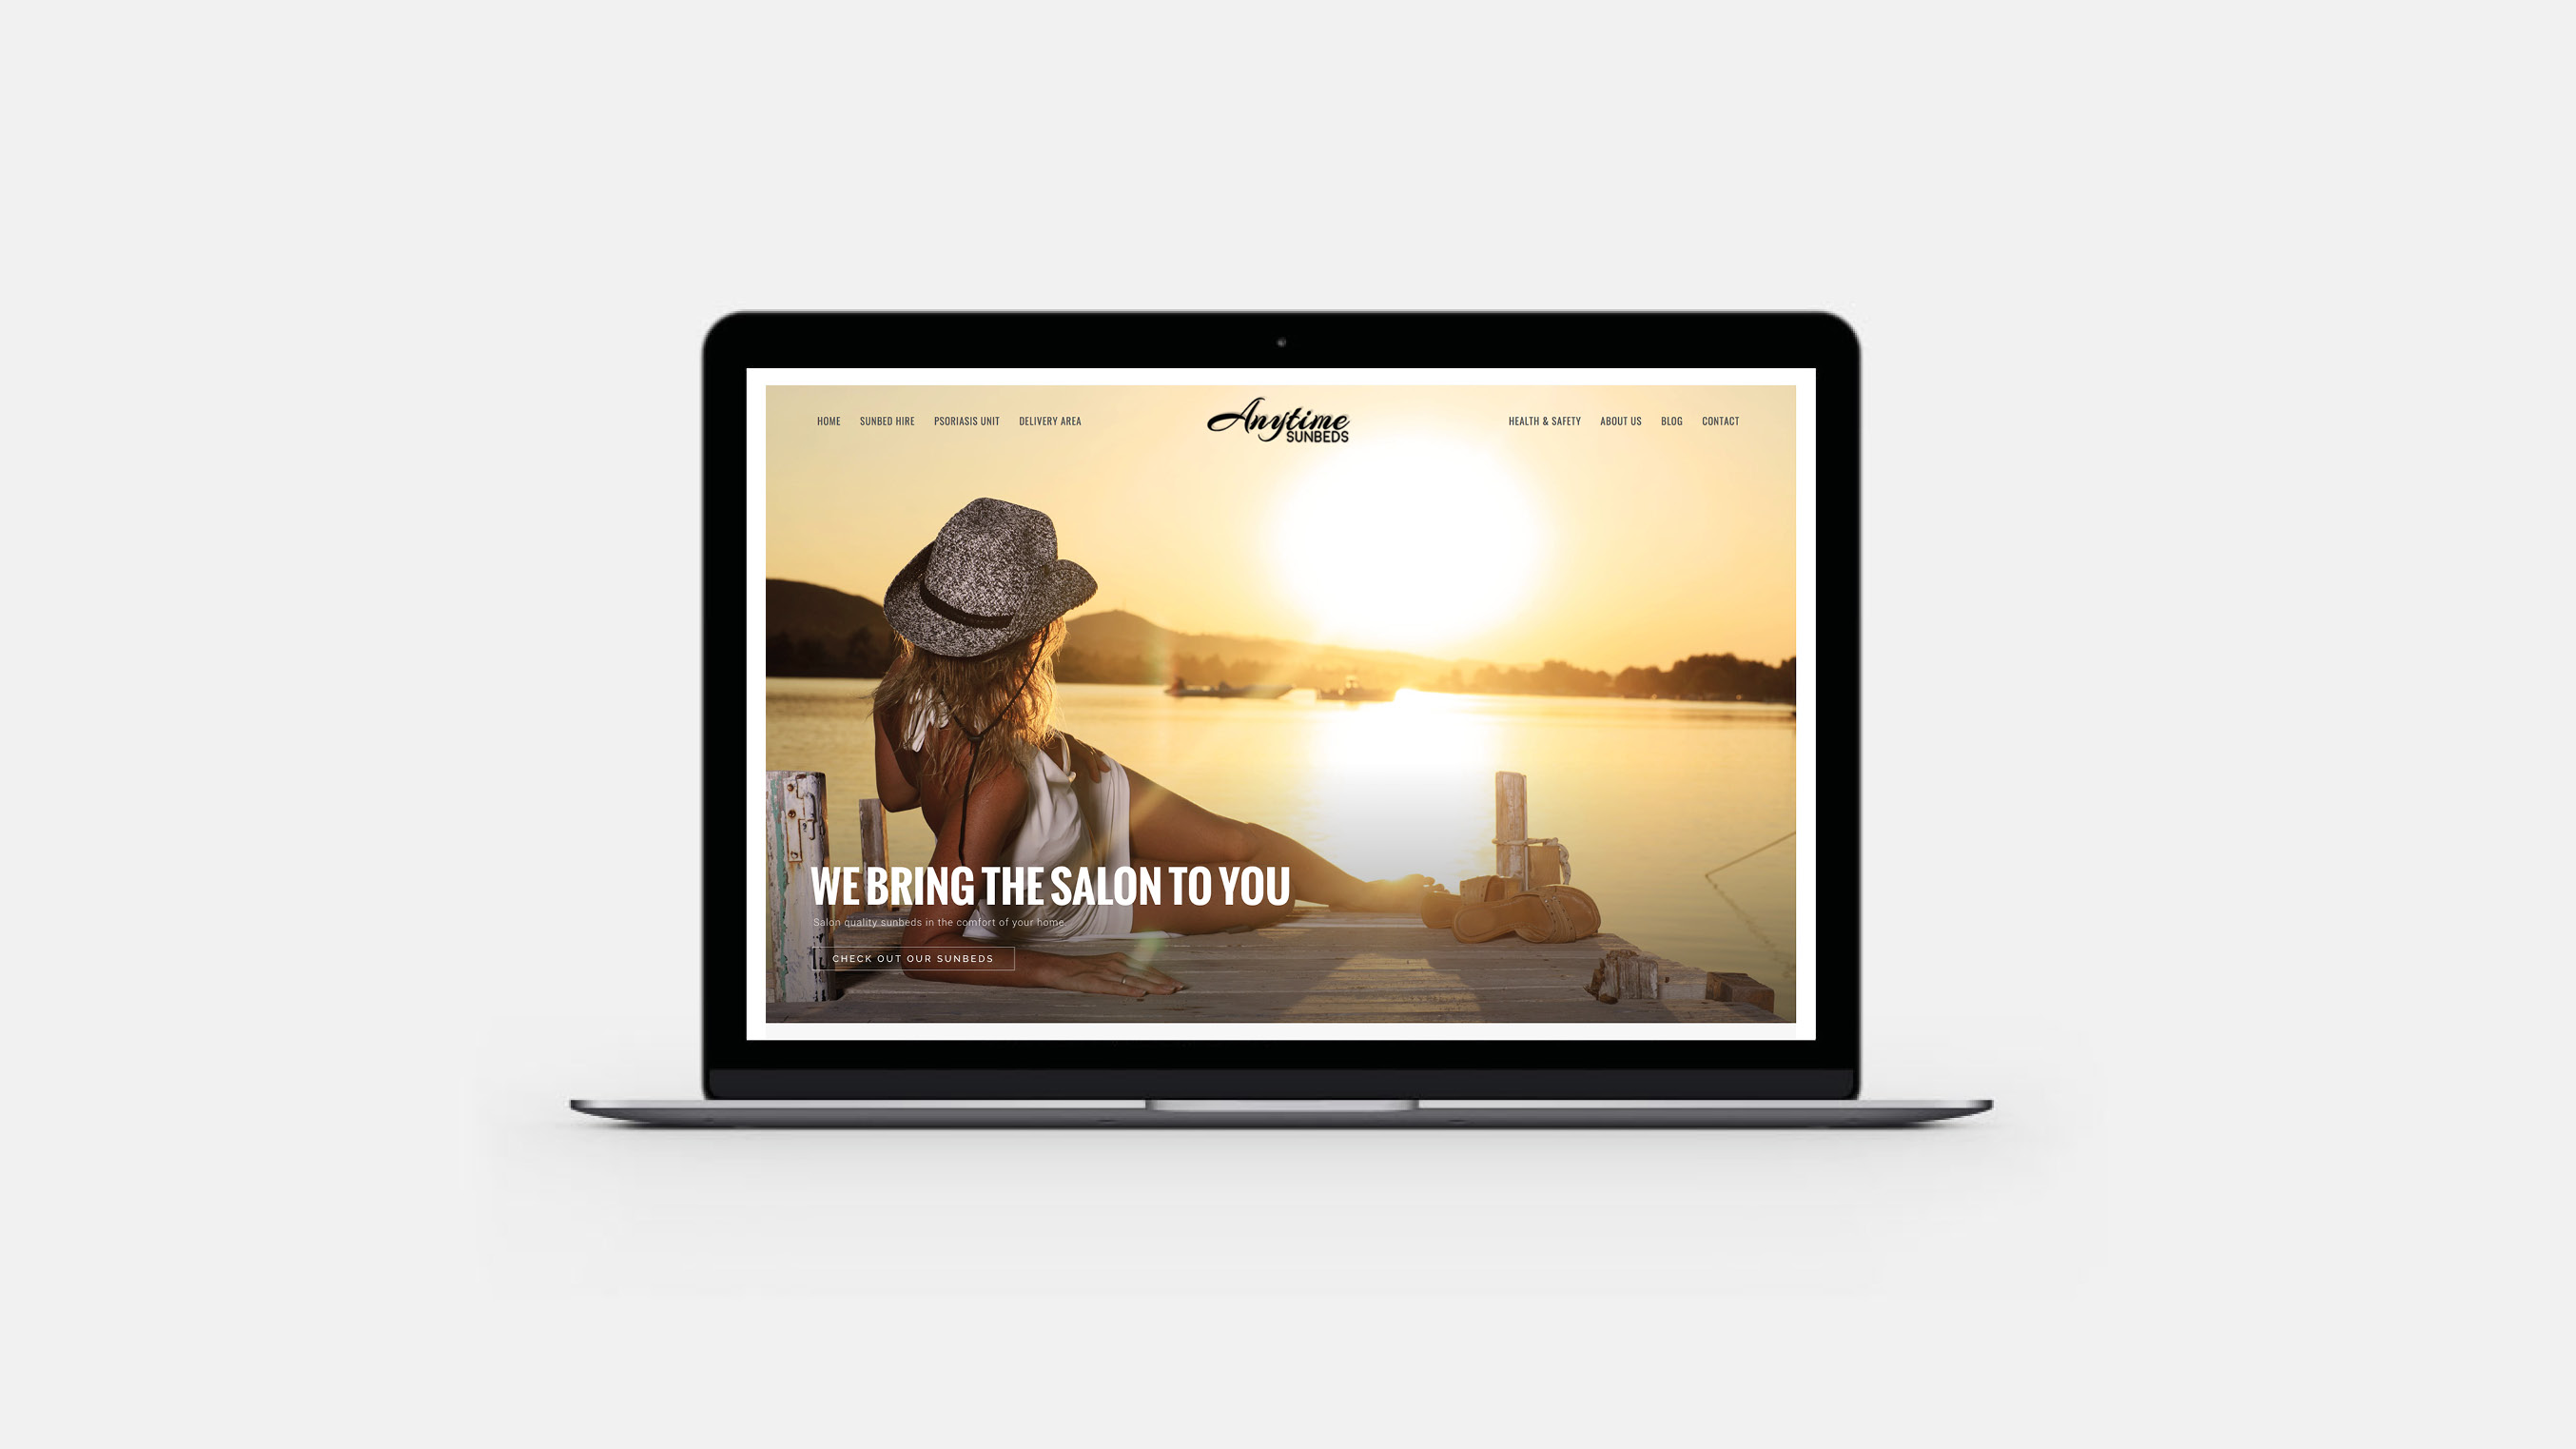 Anytime sunbeds website design